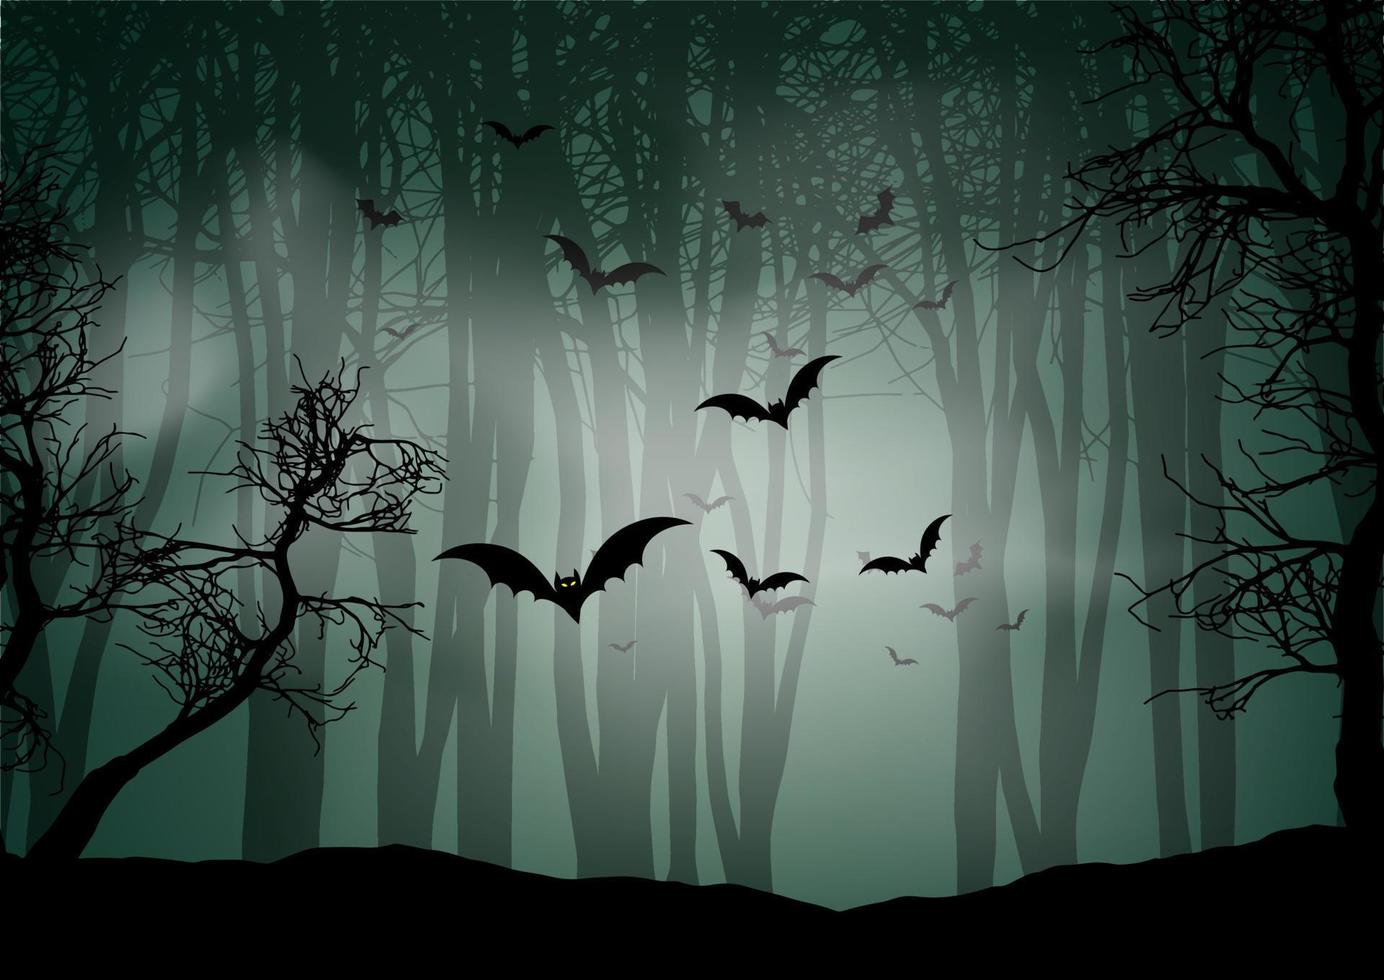 fond d'halloween avec des chauves-souris de paysage de forêt brumeuse vecteur